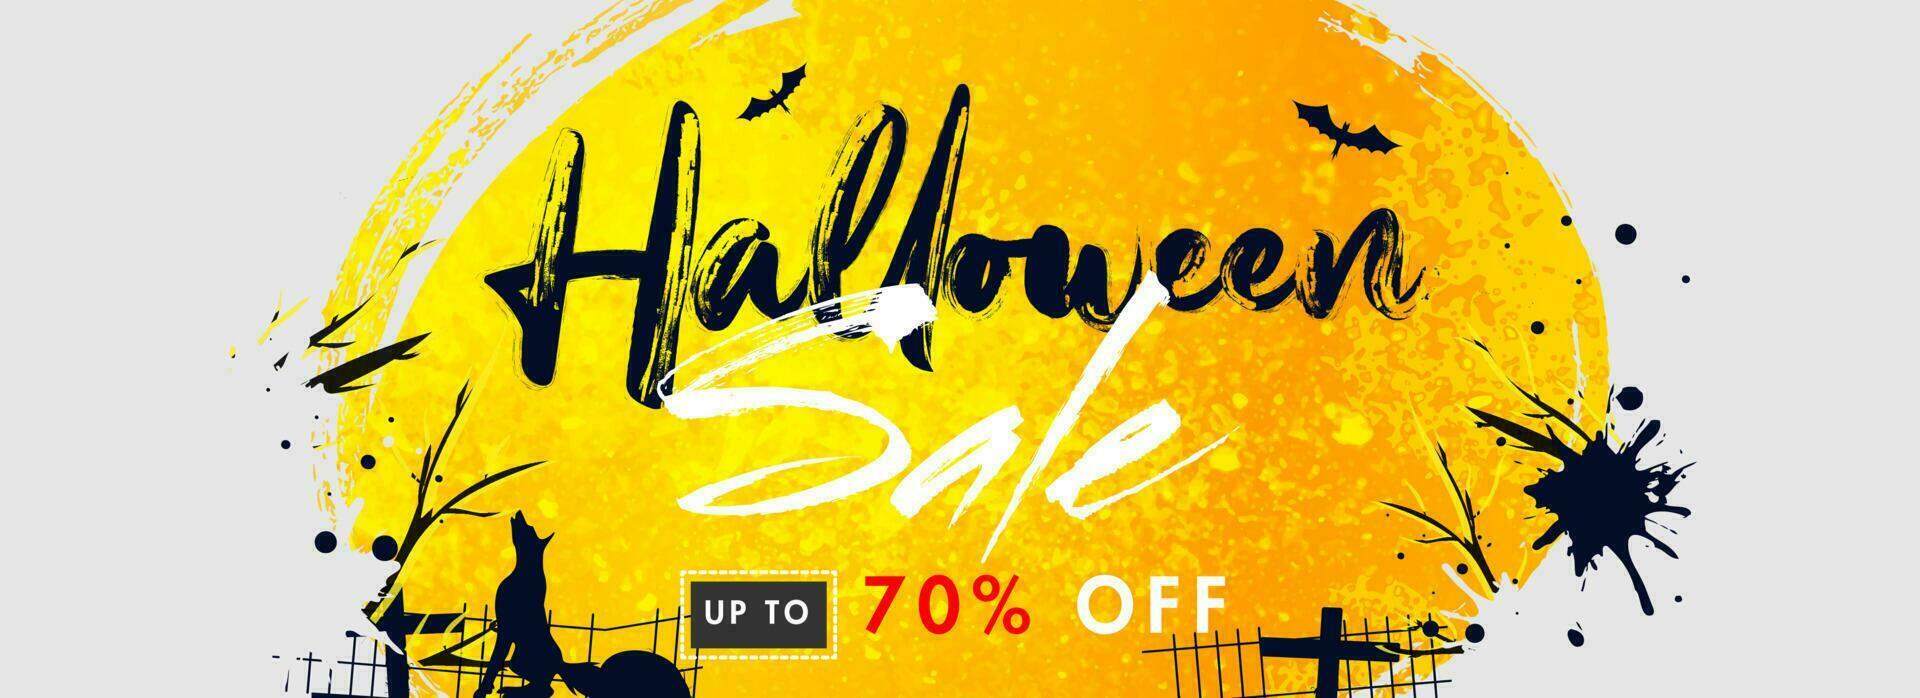 Rabatt Angebot zum Halloween Verkauf Header oder Banner Design. vektor